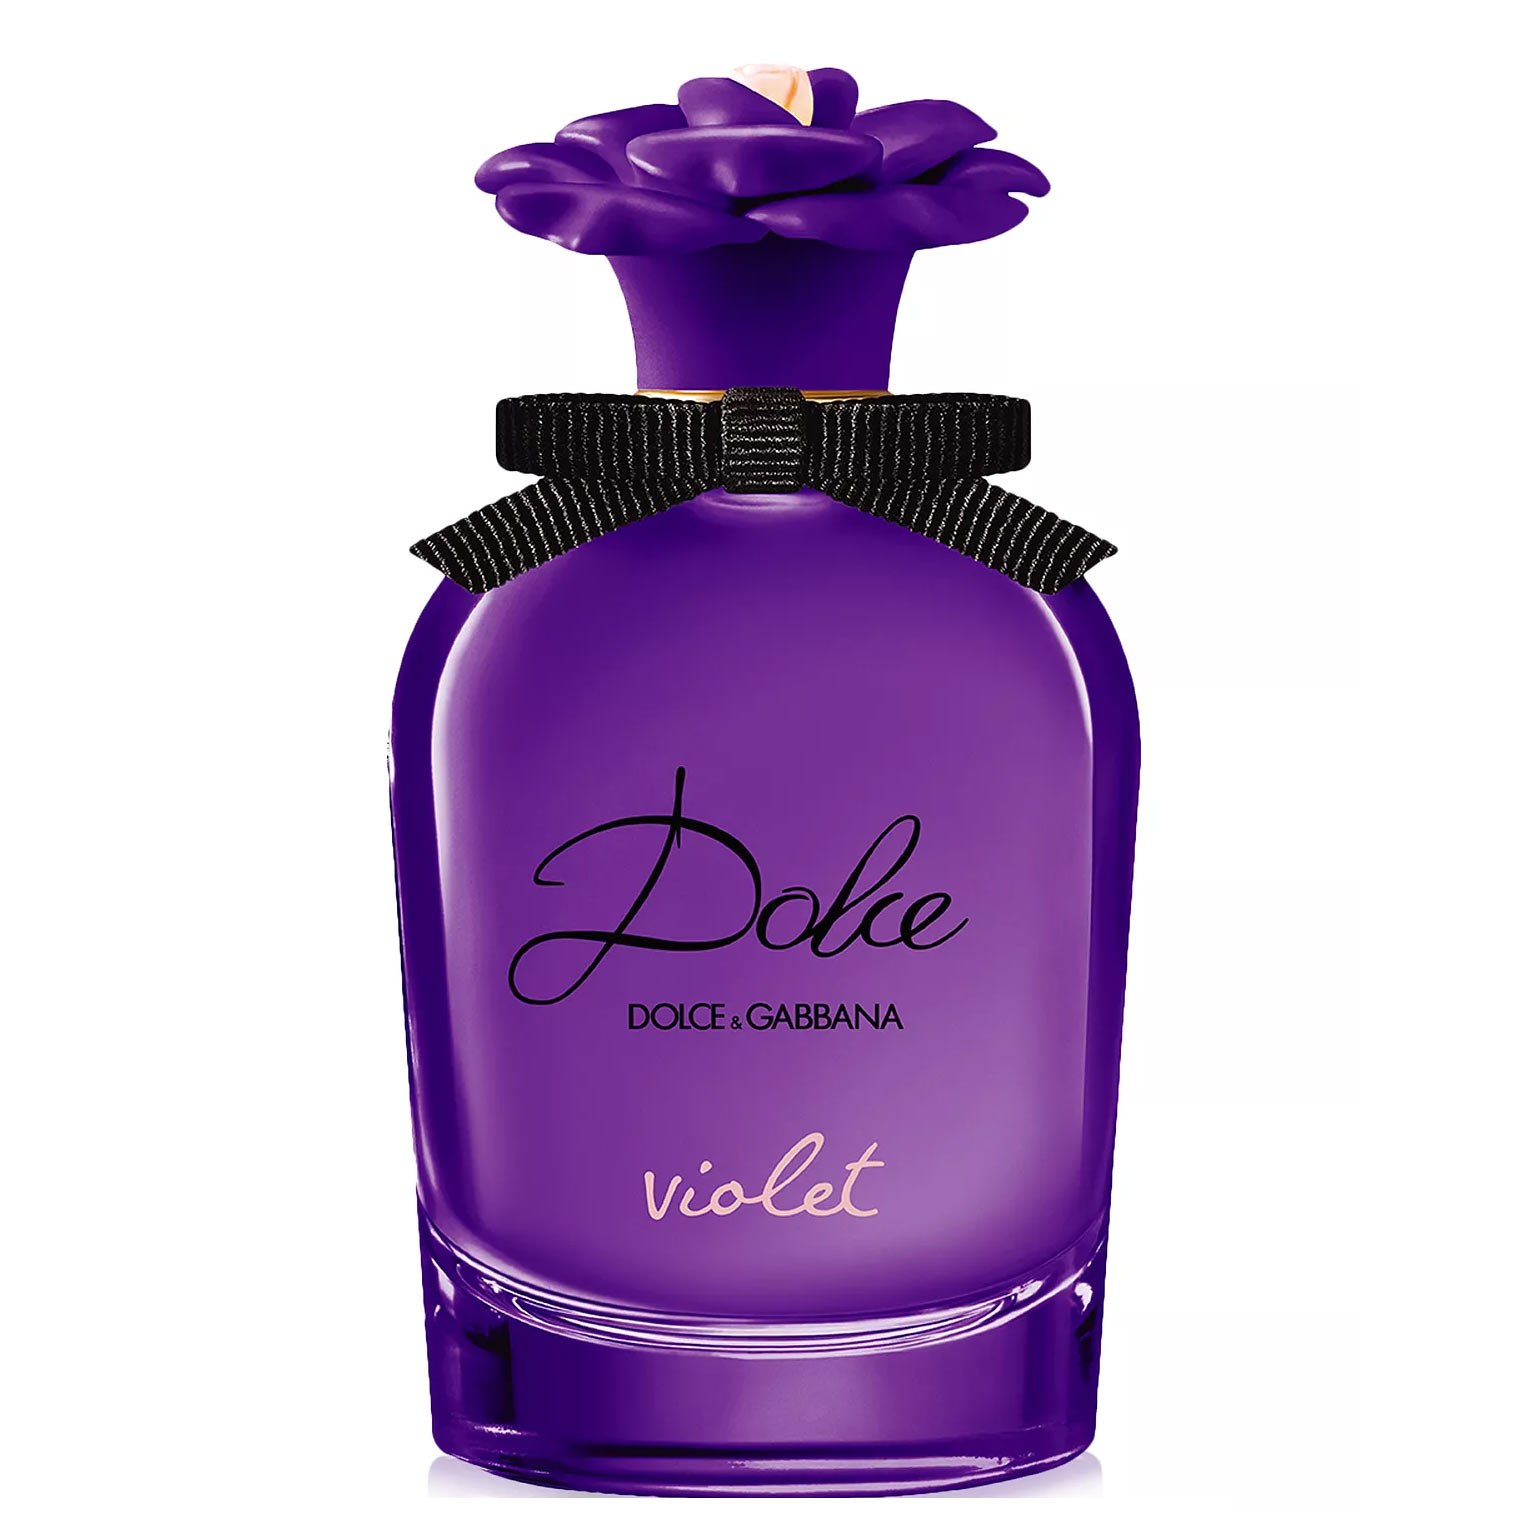 Dolce Violet Dolce & Gabbana Image